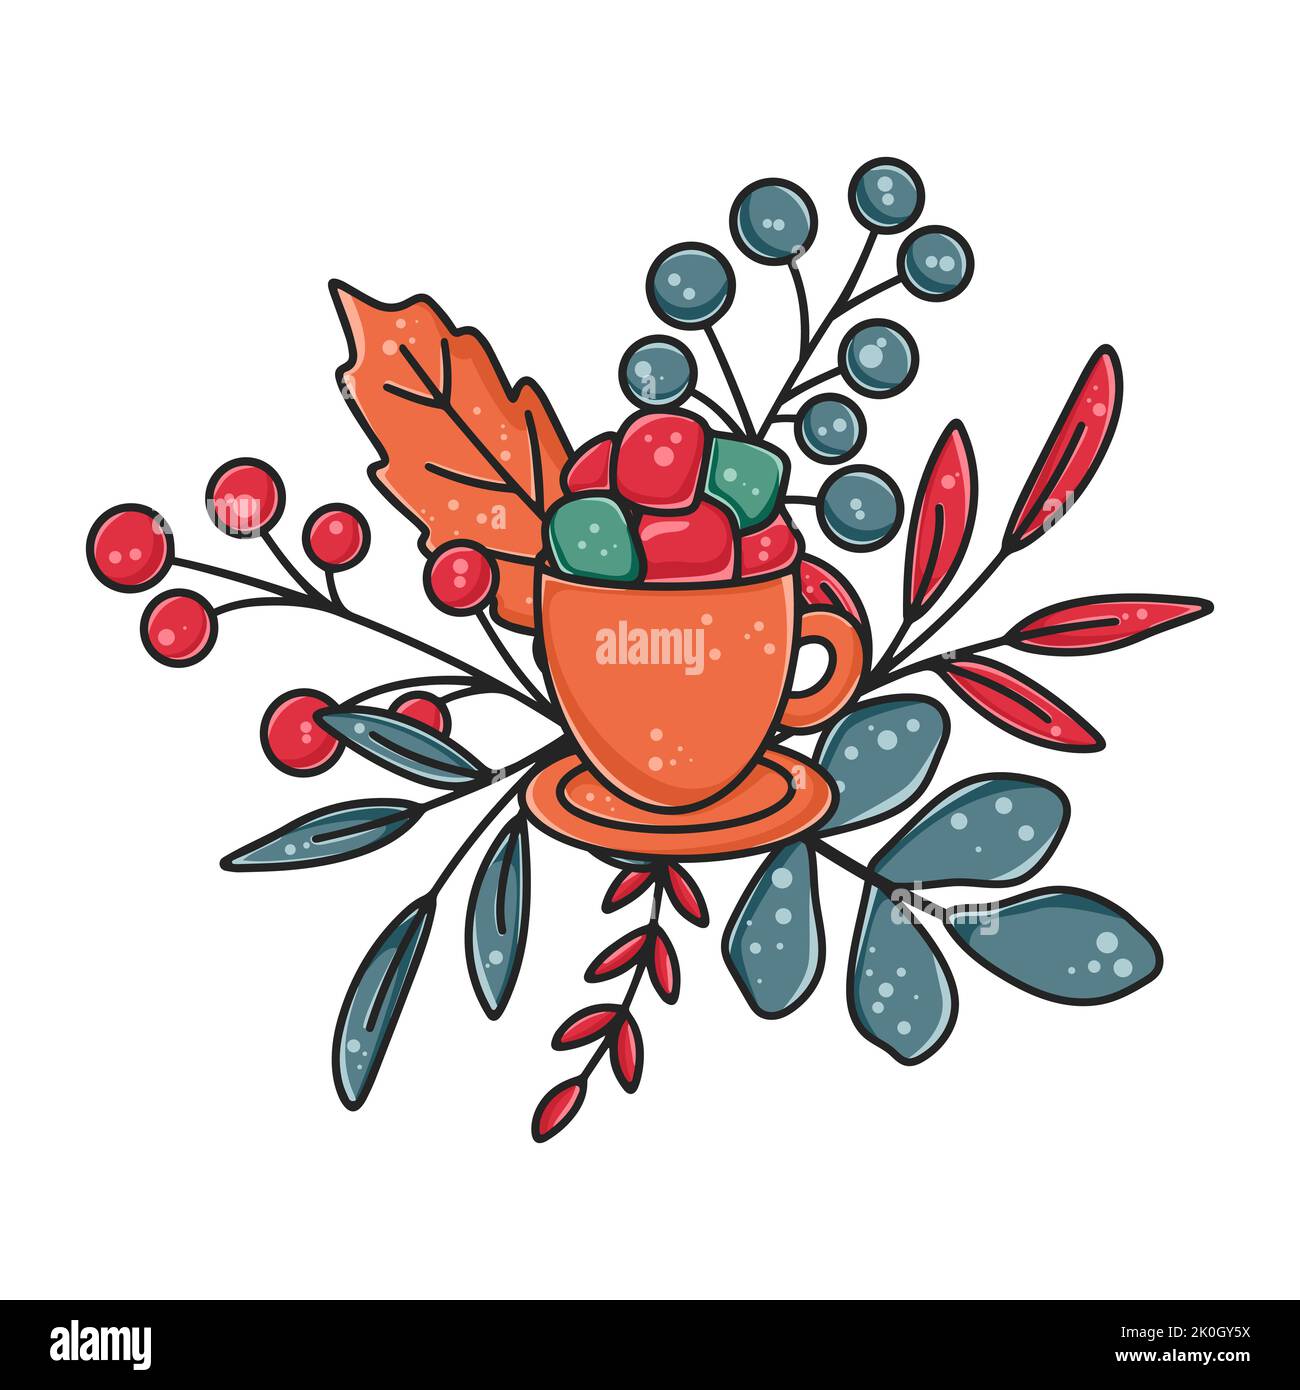 Composition chaleureuse de café d'automne ou d'hiver avec baies de guimauves et feuillage. Illustration vectorielle isolée pour réchauffer une boisson délicieuse. Le concept Illustration de Vecteur